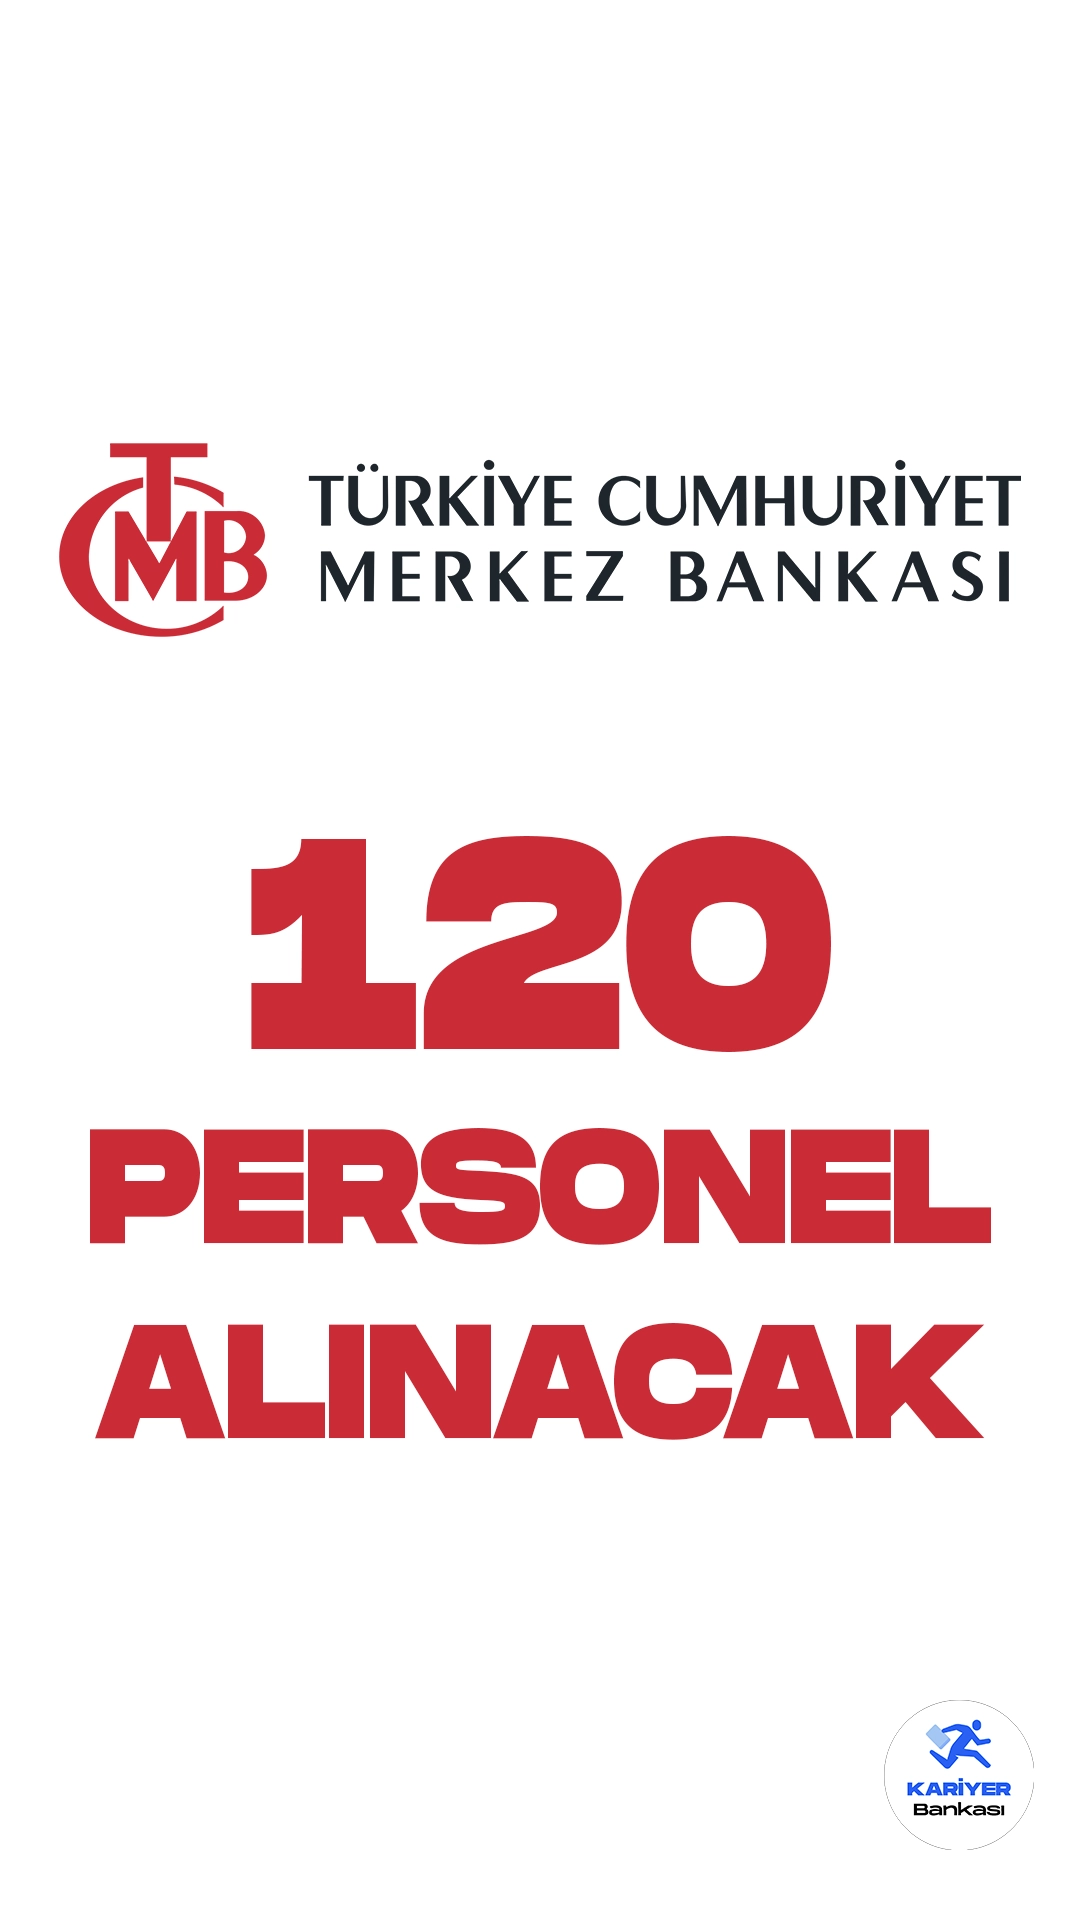 Türkiye Cumhuriyet Merkez Bankası (TCMB) personel alımı duyuruları yayımlandı. Banka resmi sayfası üzerinden yayımlanan duyurulara göre, Merkez Bankasına mühendis ve teknisyen pozisyonları için kadrolu ve sözleşmeli olmak üzere 120 personel alımı yapılacağı aktarıldı. Başvurular 4 Ağustos itibarıyla başladı. Başvuru yapacak adayların belirtilen şartları dikkatle incelemesi gerekmektedir.